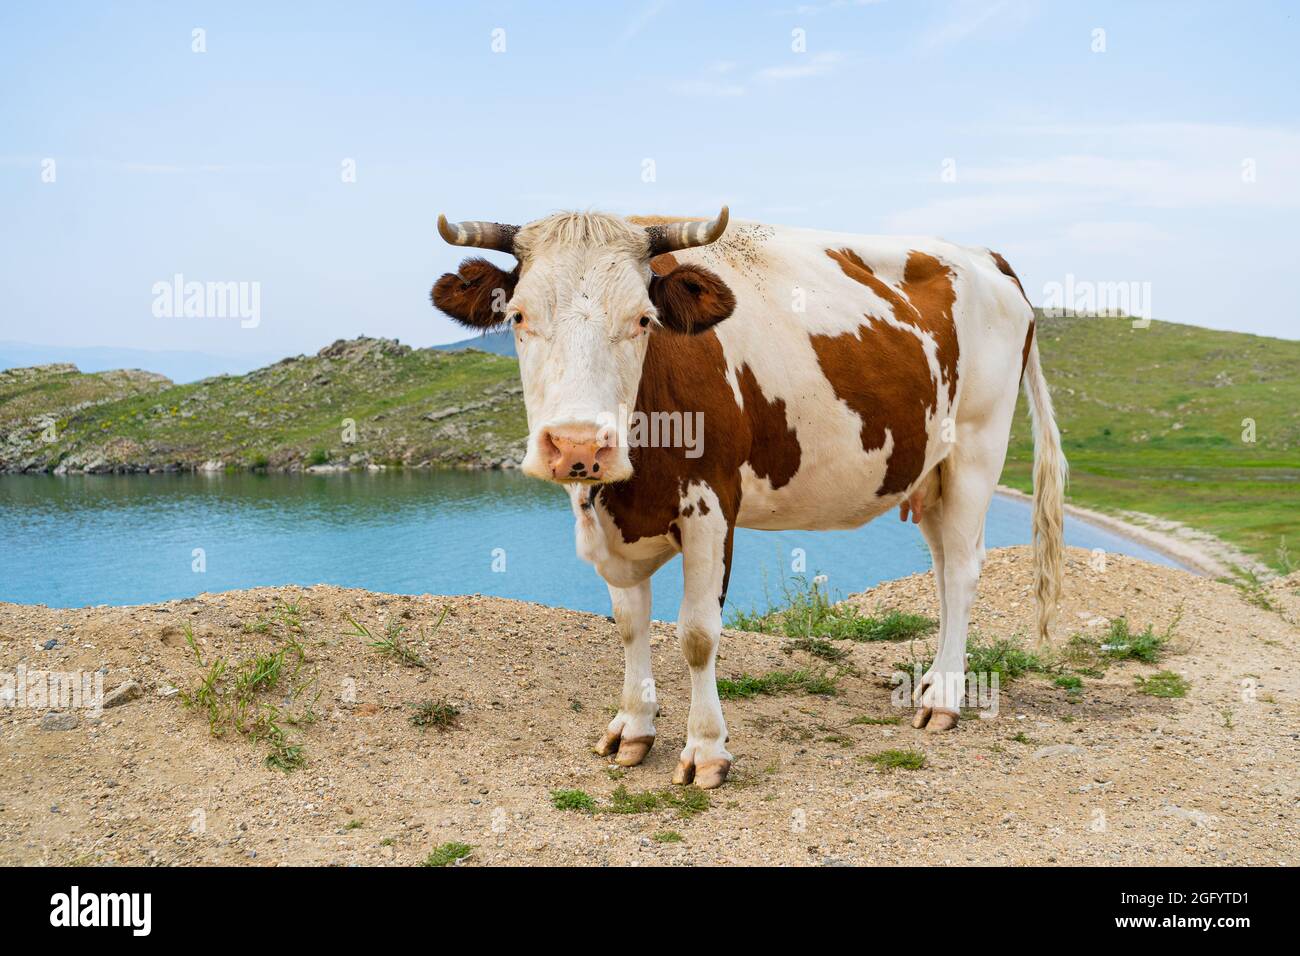 Une vache blanche bien nourrie avec des cornes se pose dans l'herbe contre un ciel bleu Banque D'Images